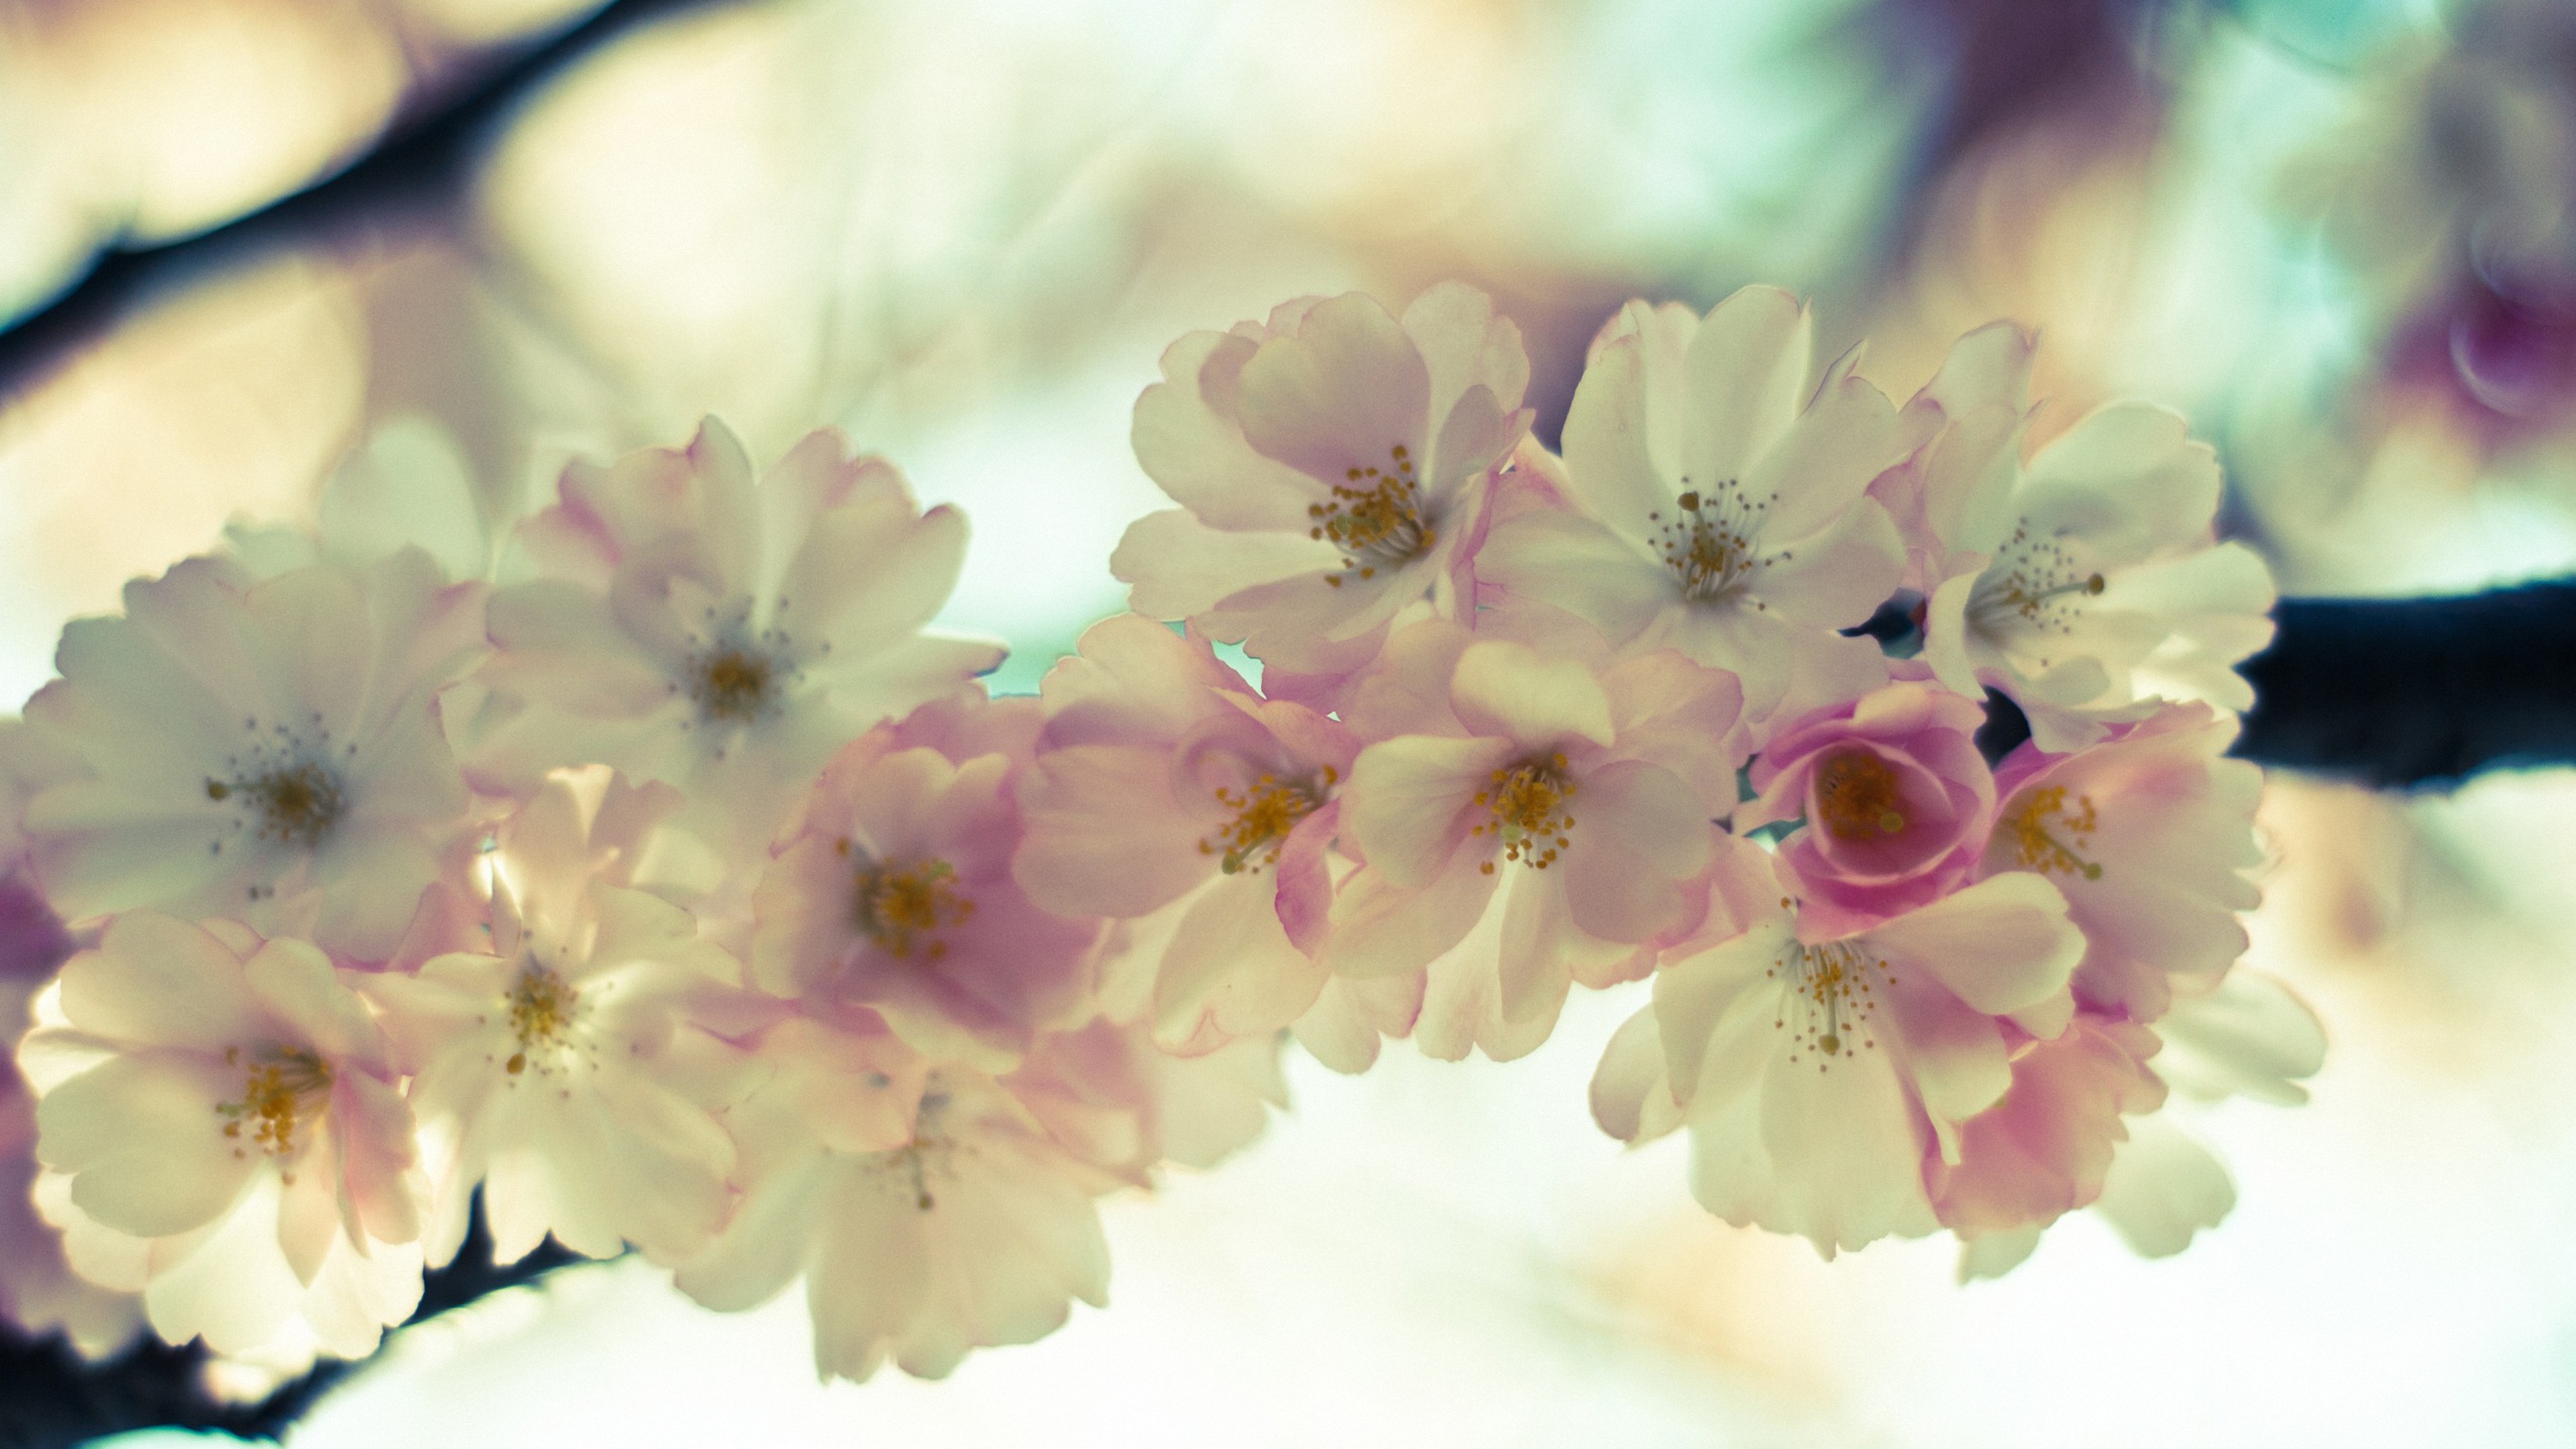 Фото весны красивые на заставку на телефон. Нежные цветочки. Нежный цветок. Весенние цветочки. Цветы в пастельных тонах.